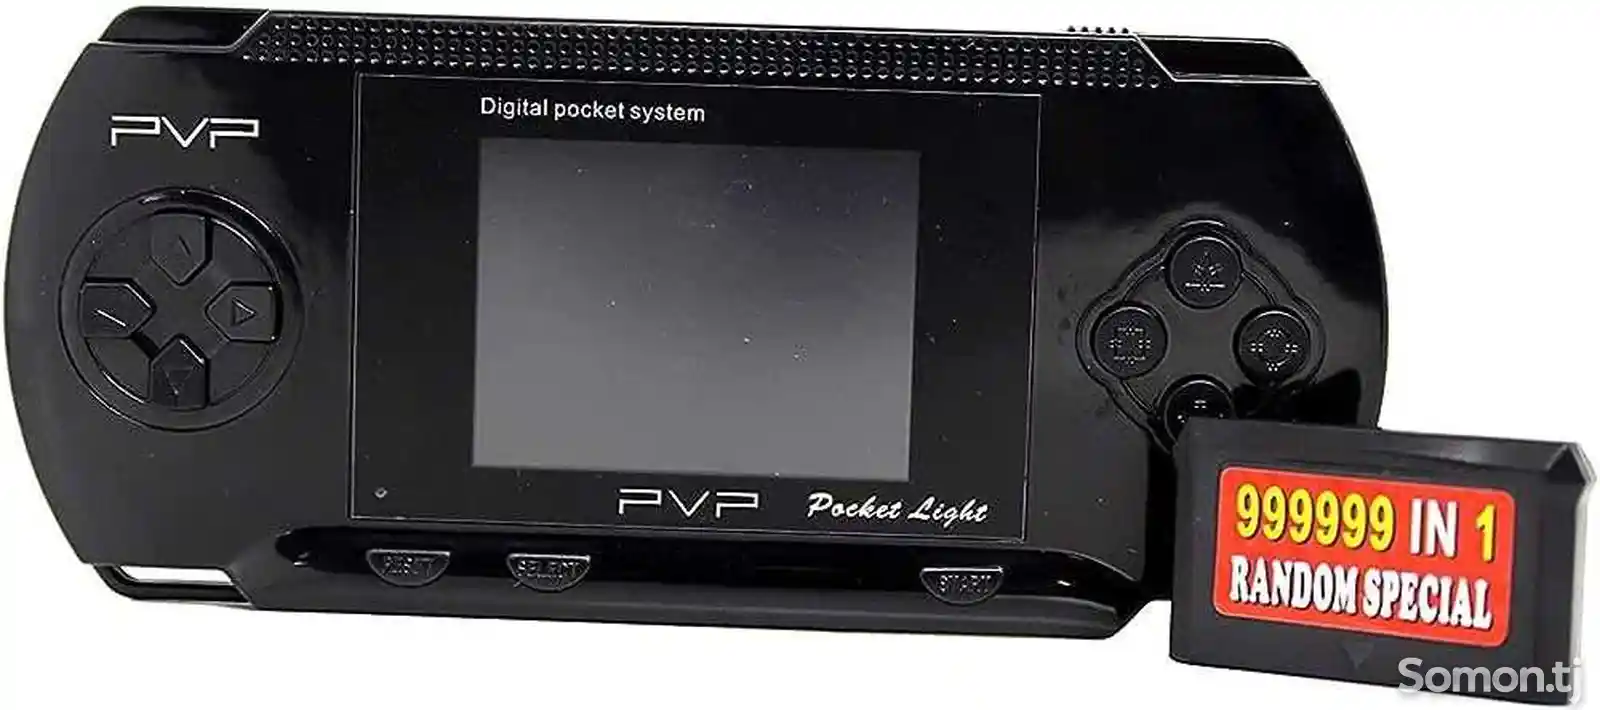 Портативная игровая консоль PVP Station Light 3000-3